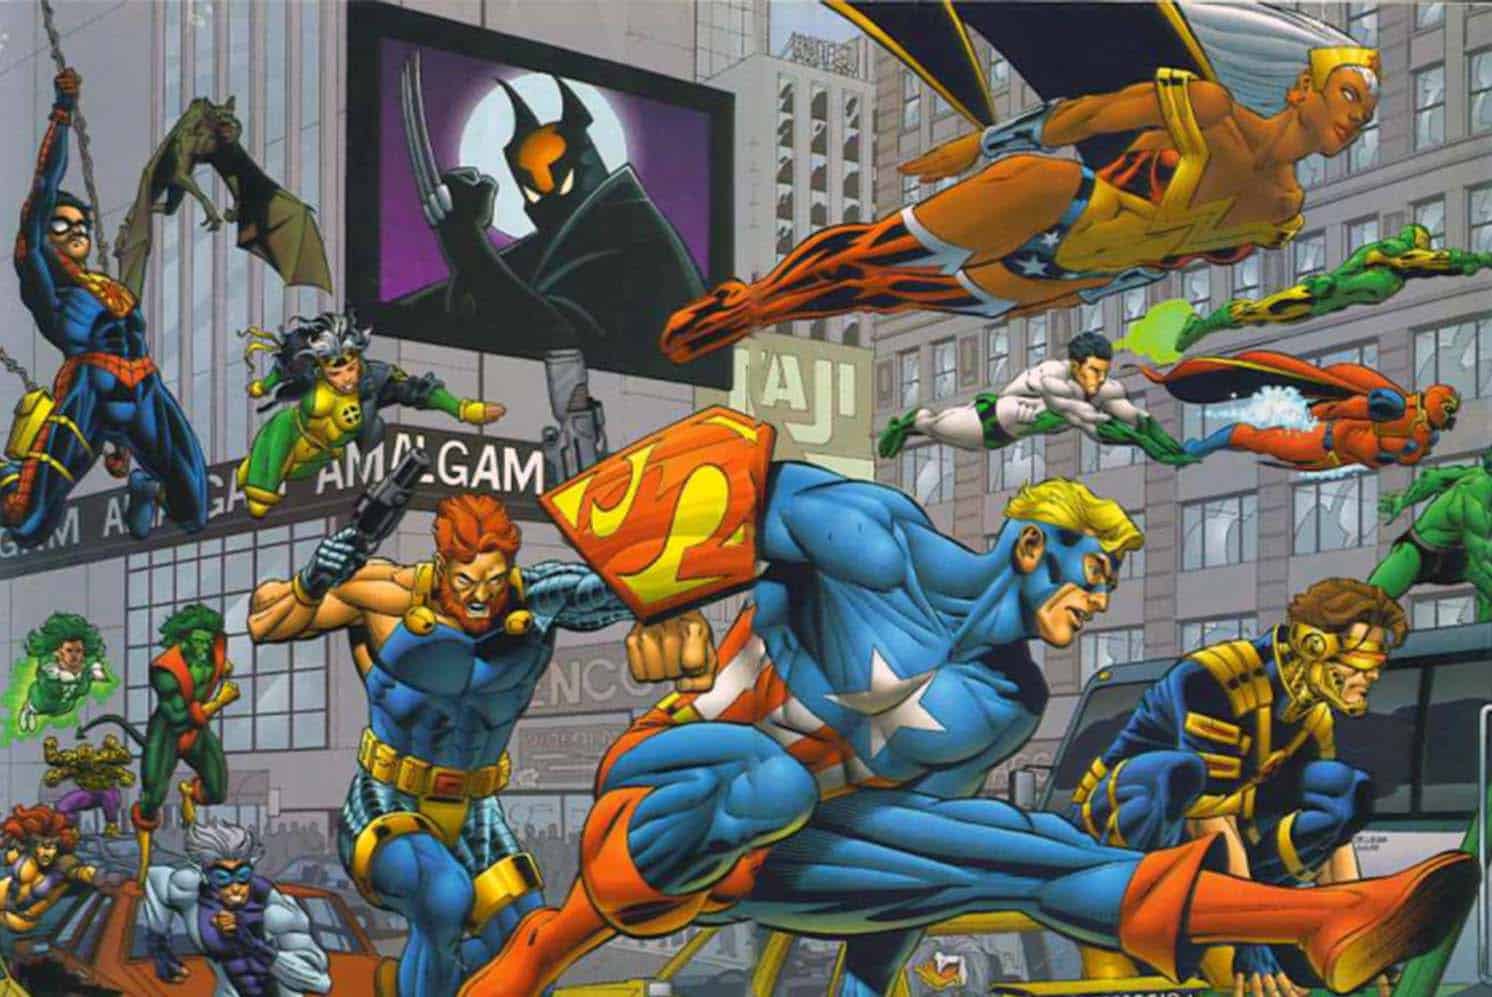 Personagens do universo Amalgama que uniu personagens da Marvel e da DC Comics